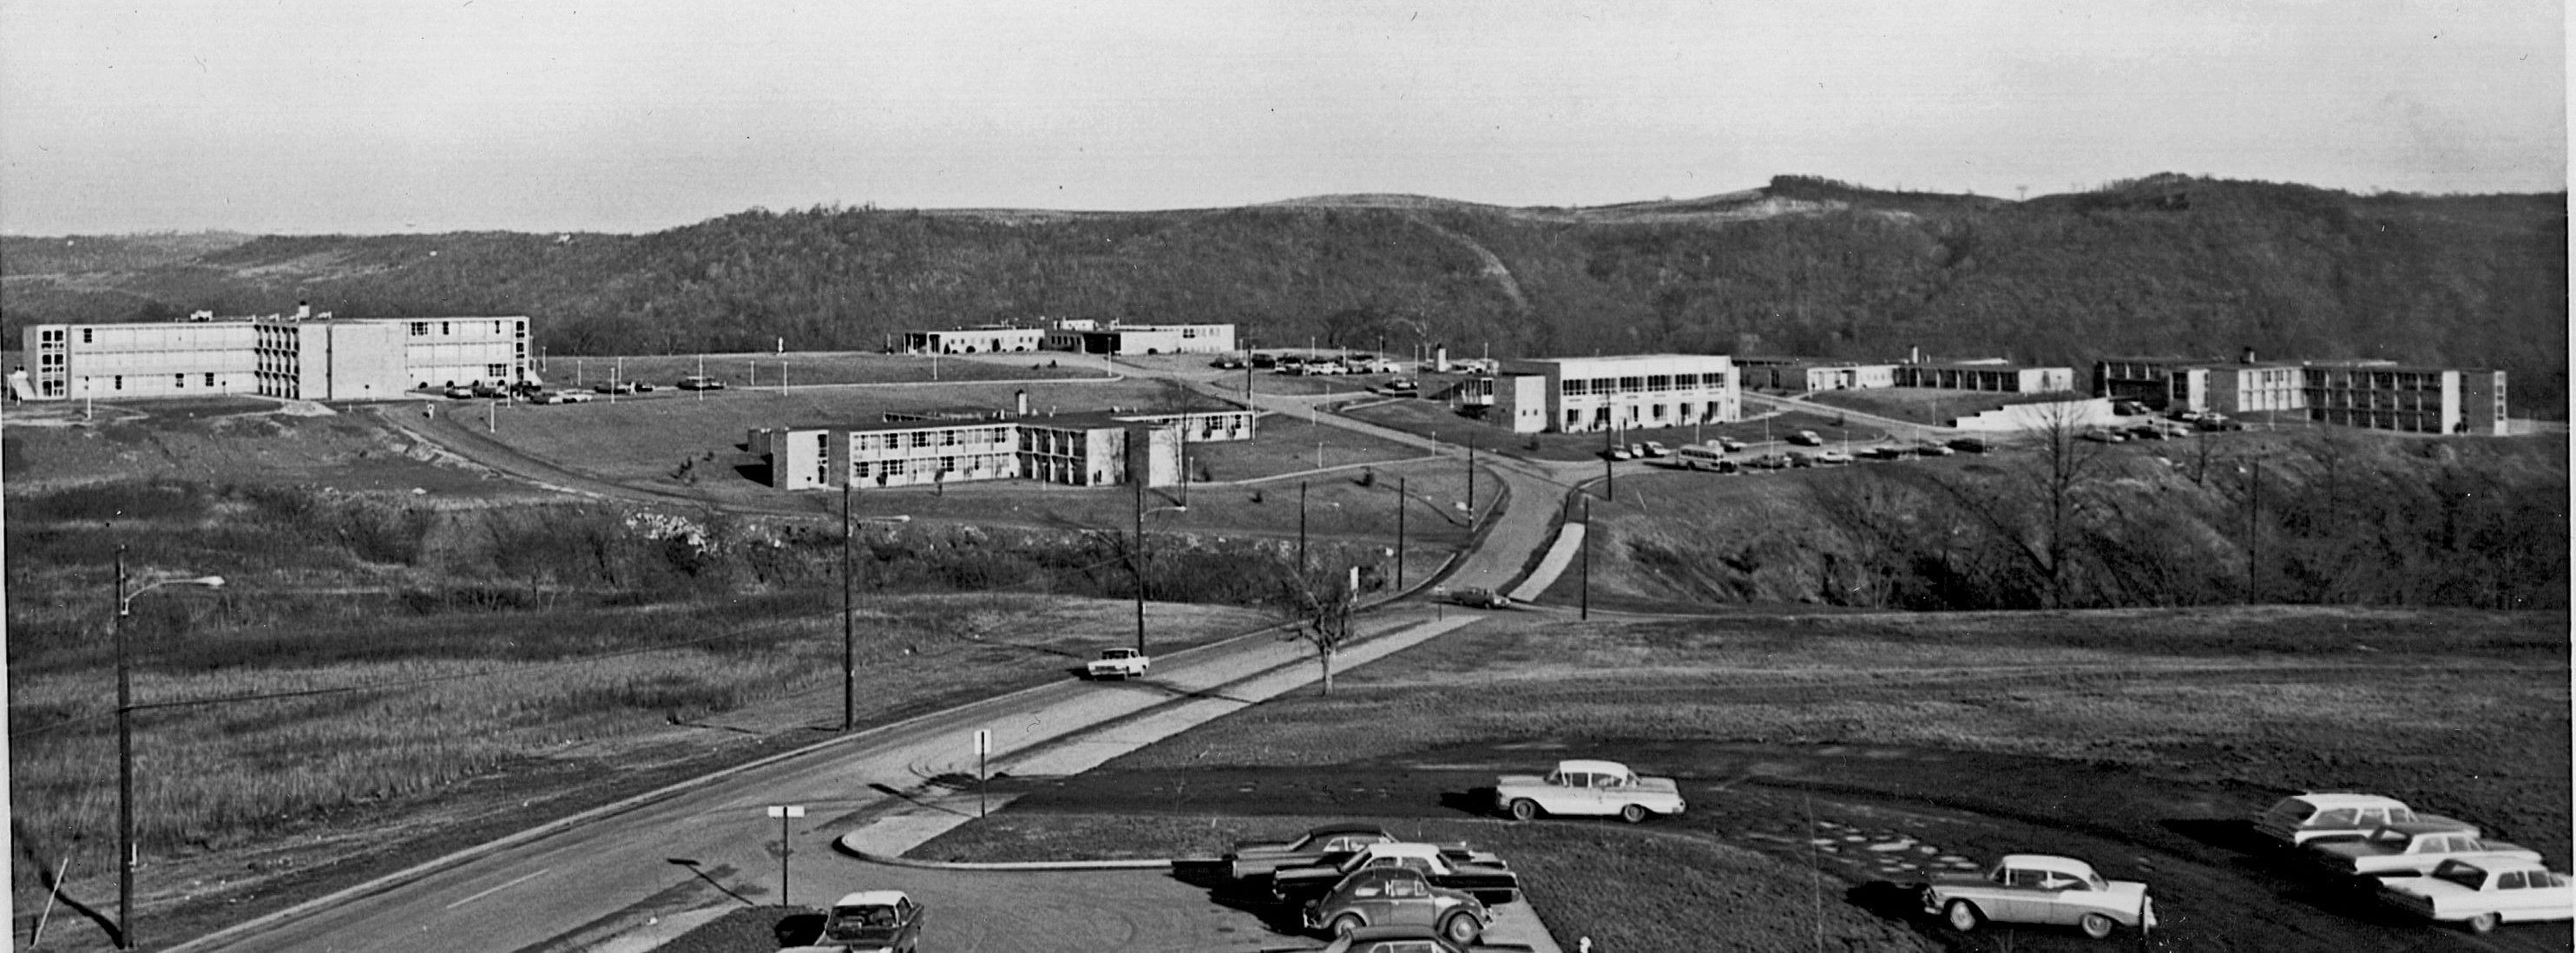 The hilltop campus circa 1961.